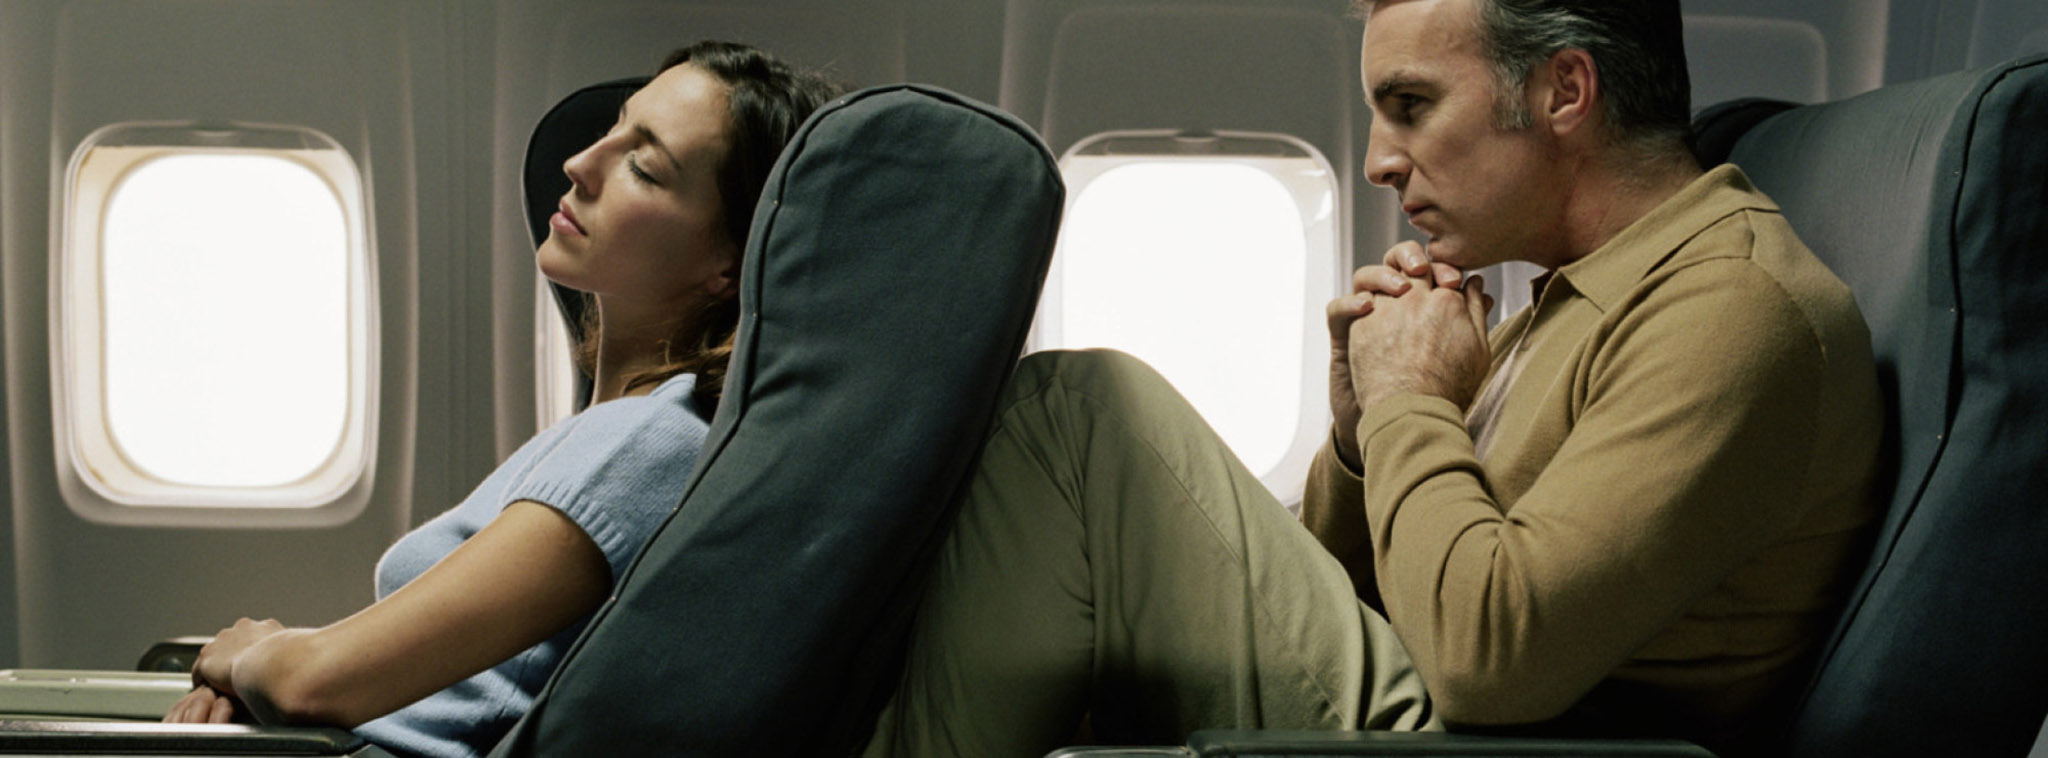 Trên máy bay, ai là người sở hữu khoảng không gian ngã lưng ghế, bạn hay người ngồi sau bạn?